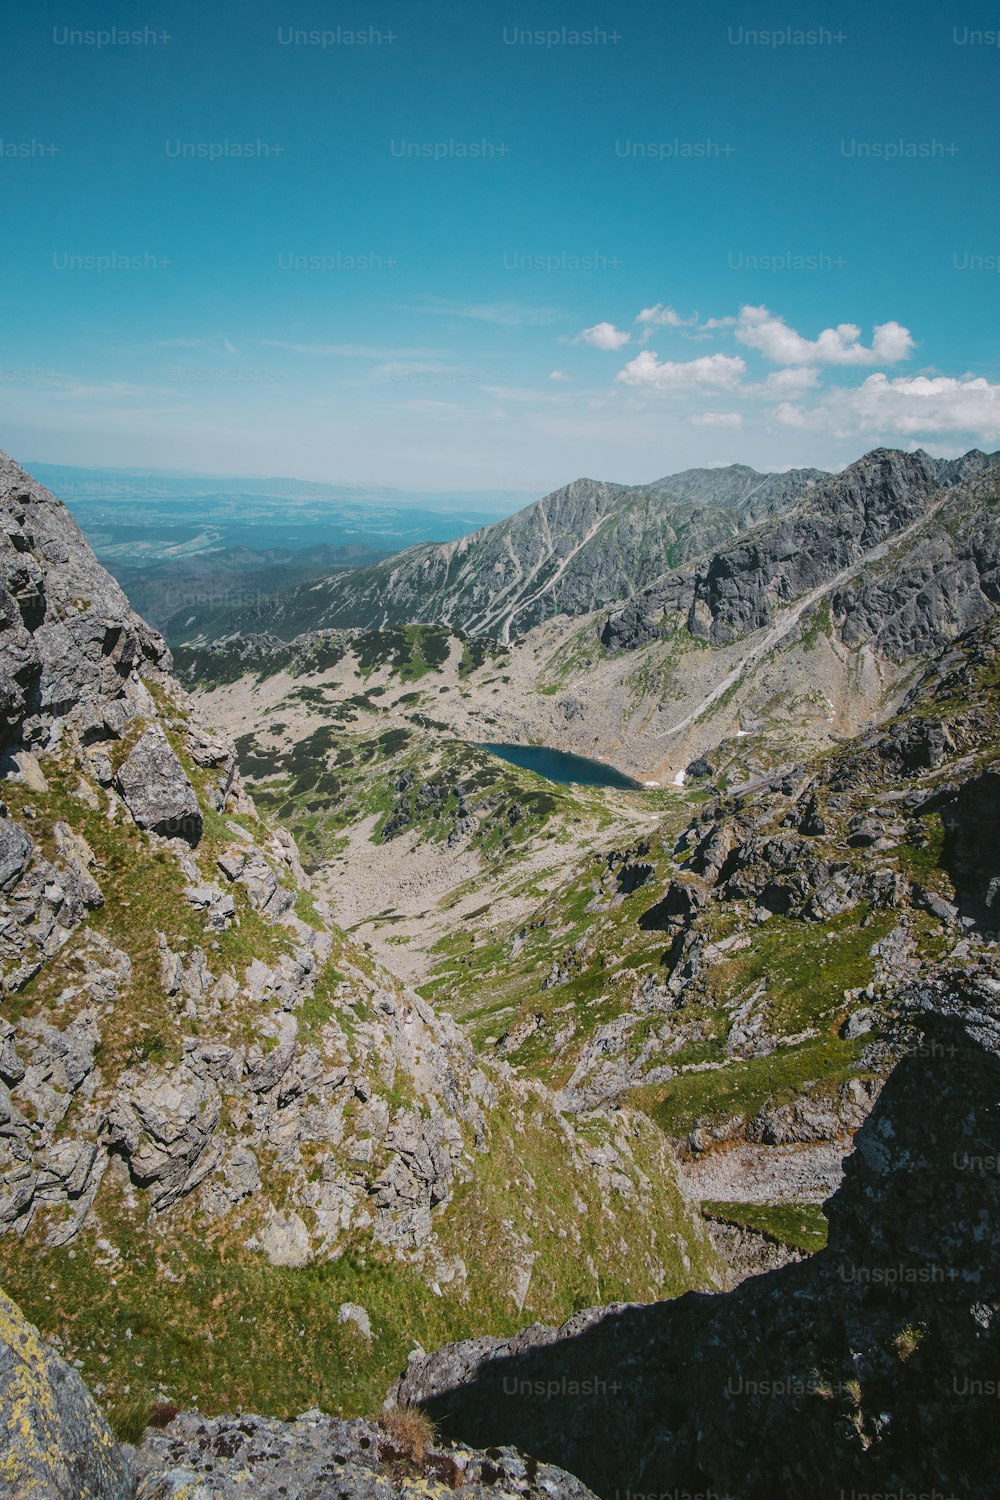 une vue d’une chaîne de montagnes avec un lac au milieu